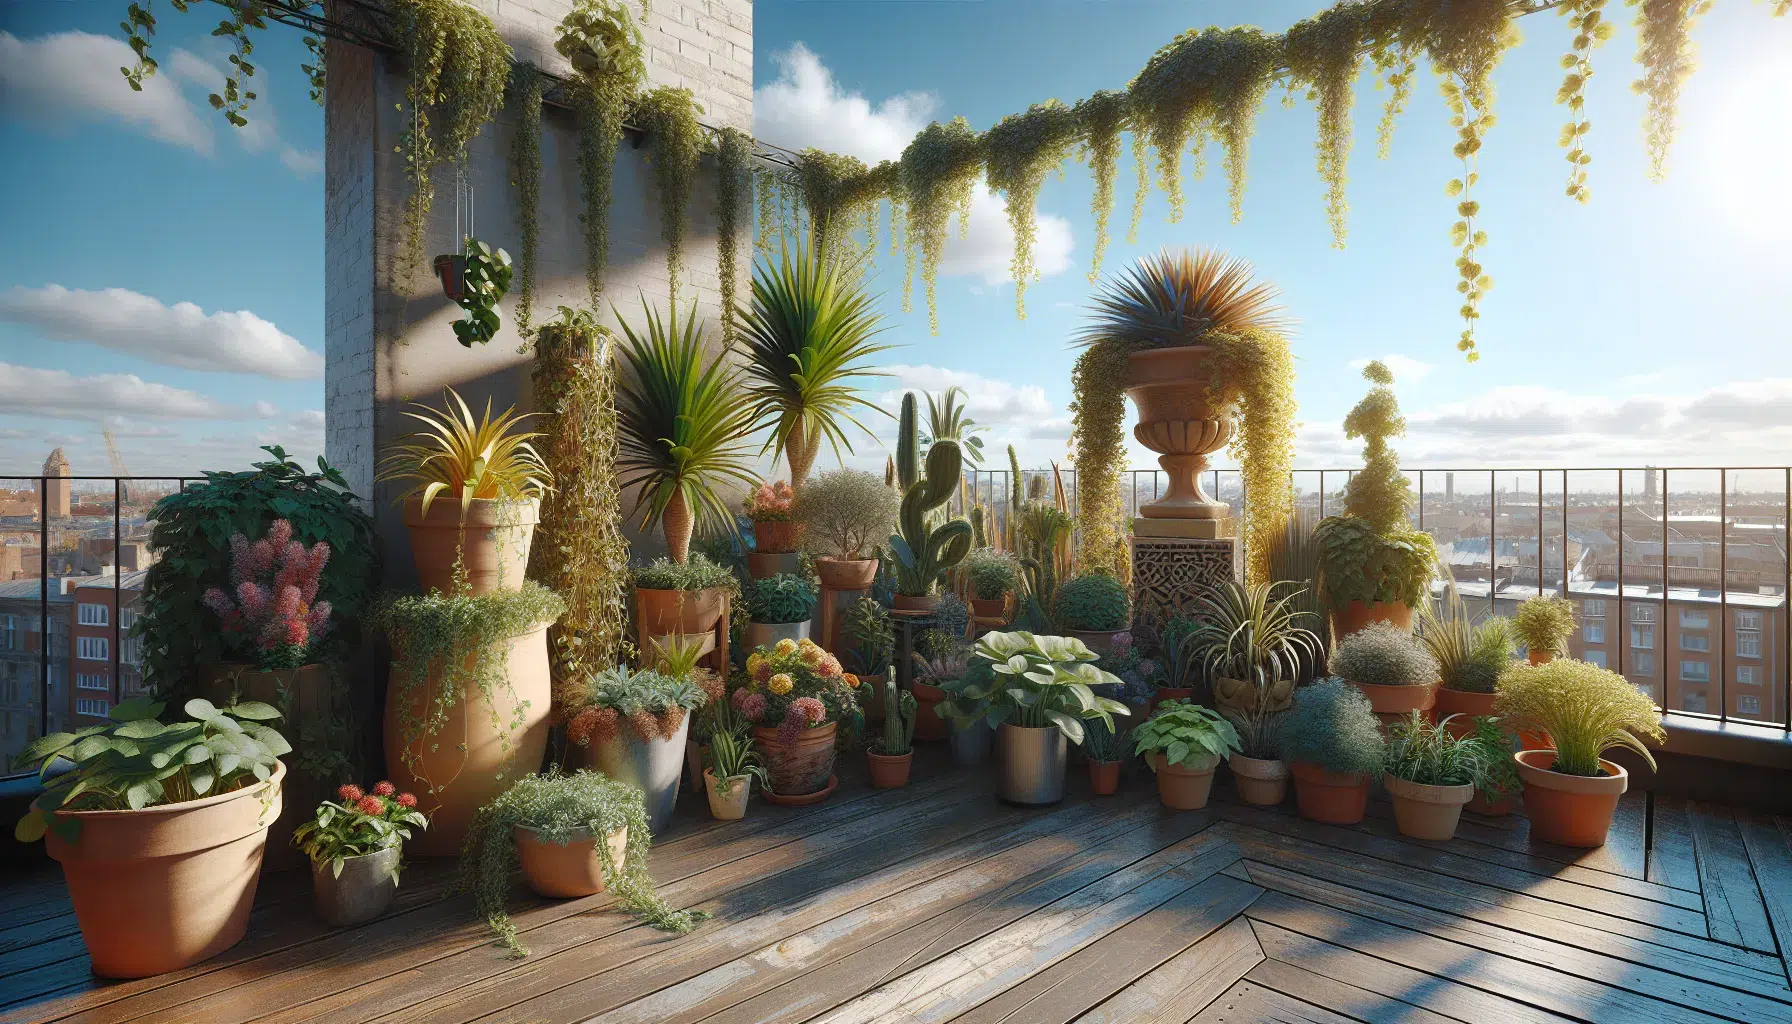 Variedad de plantas en macetas decorando una terraza al aire libre en un día soleado.